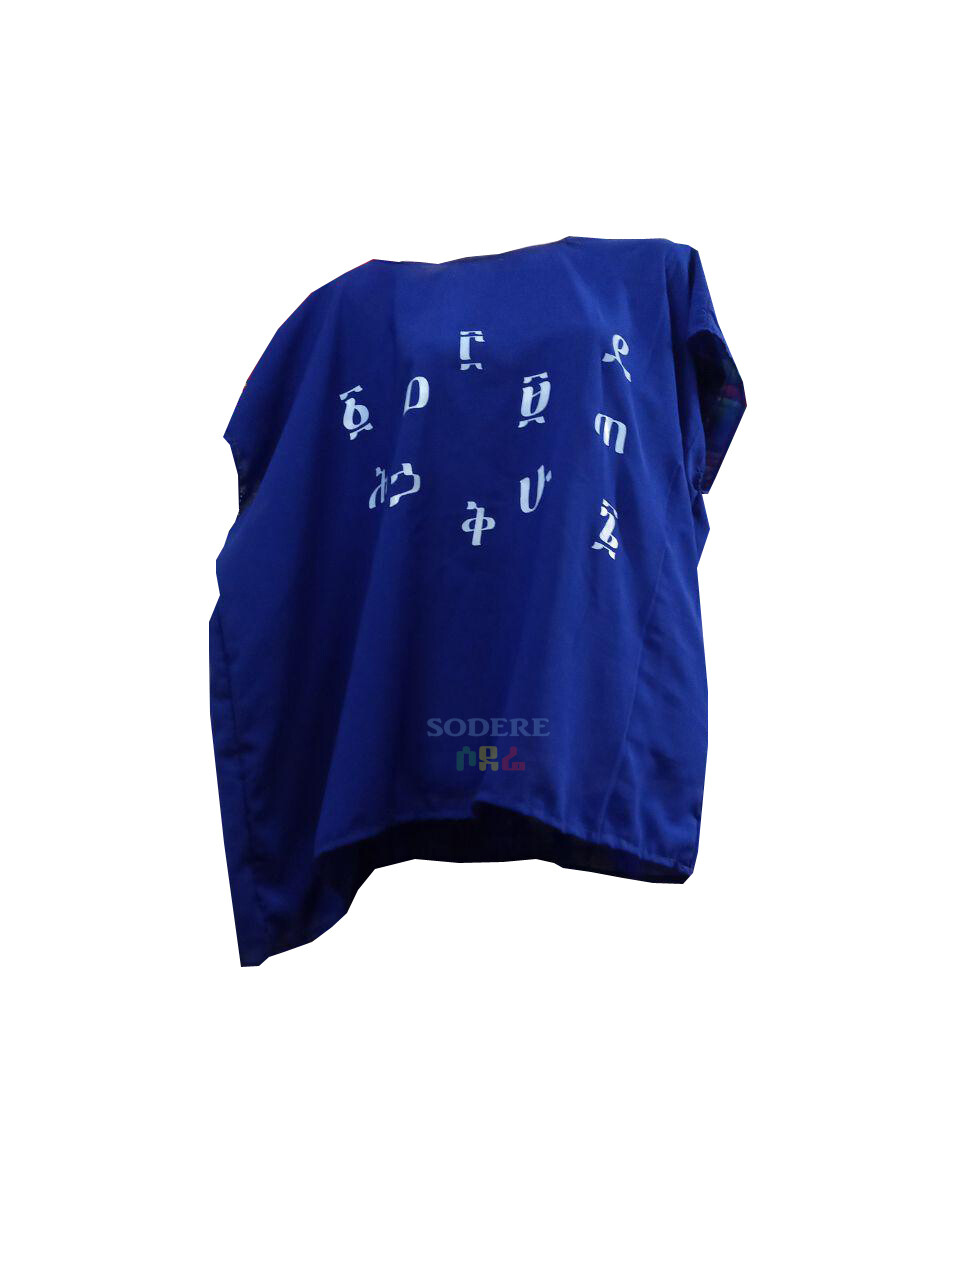 የአማርኛ ፊደሎች እና ቁጥሮች ያሉበት የሴቶች አላባሽ Women T-shirt with Amharic Numbers and Letters